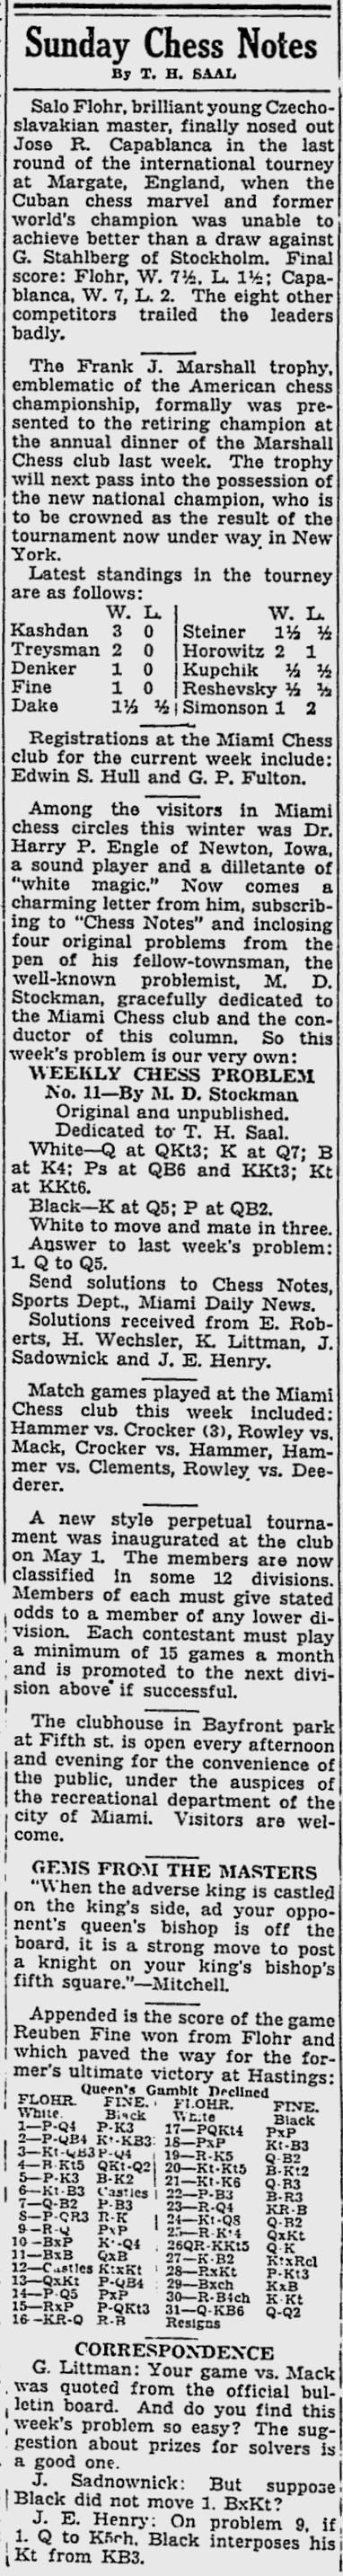 1936.05.03-01 Miami Daily News.jpg